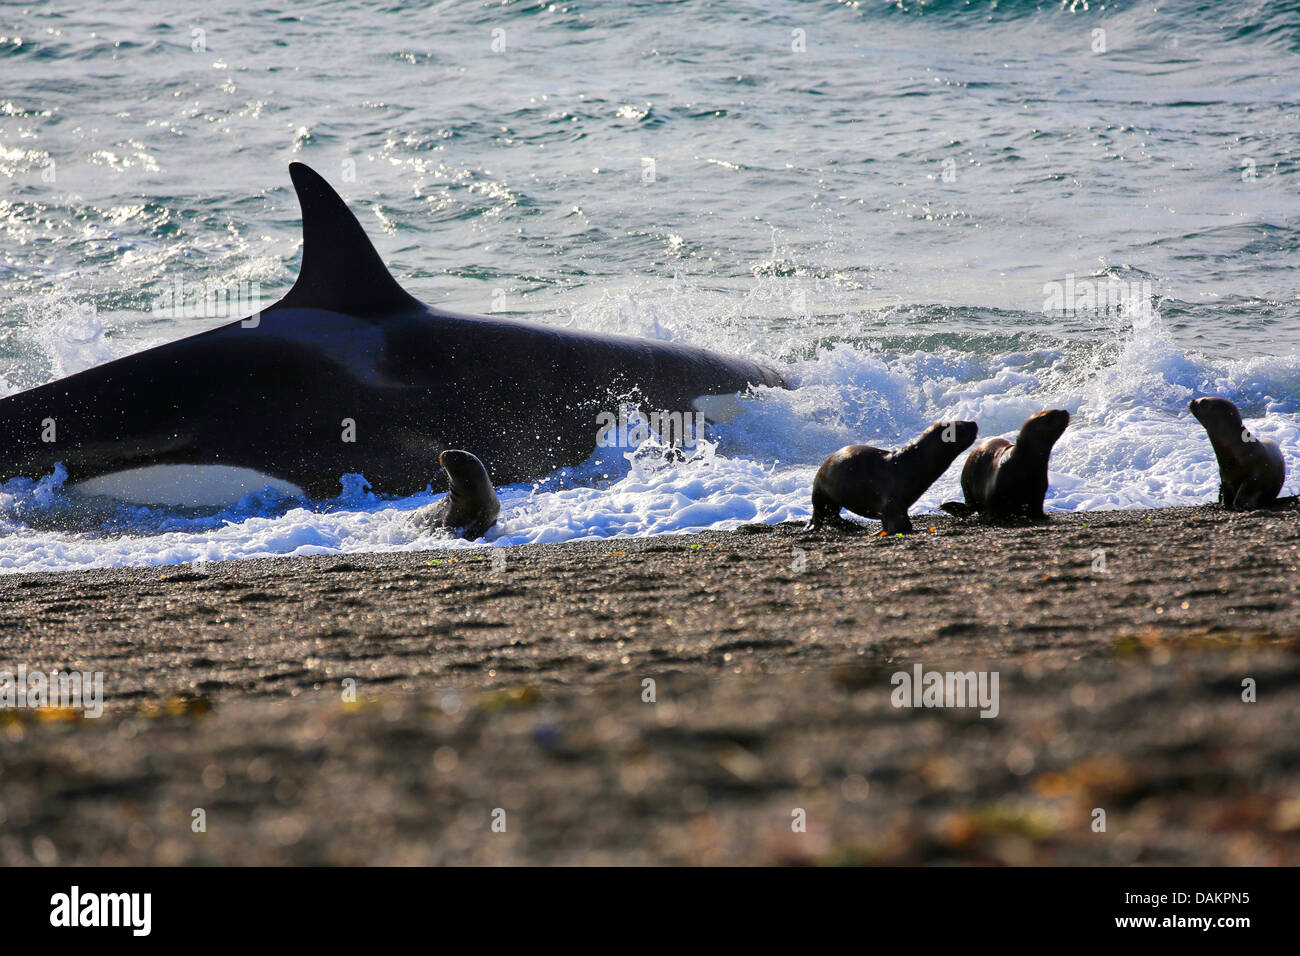 Orca, grand, de l'épaulard (Orcinus orca) grampus, mise hors tension après l'attaque sur le lion de mer de Patagonie Argentine , chiot, Patagonie, Valdes Banque D'Images